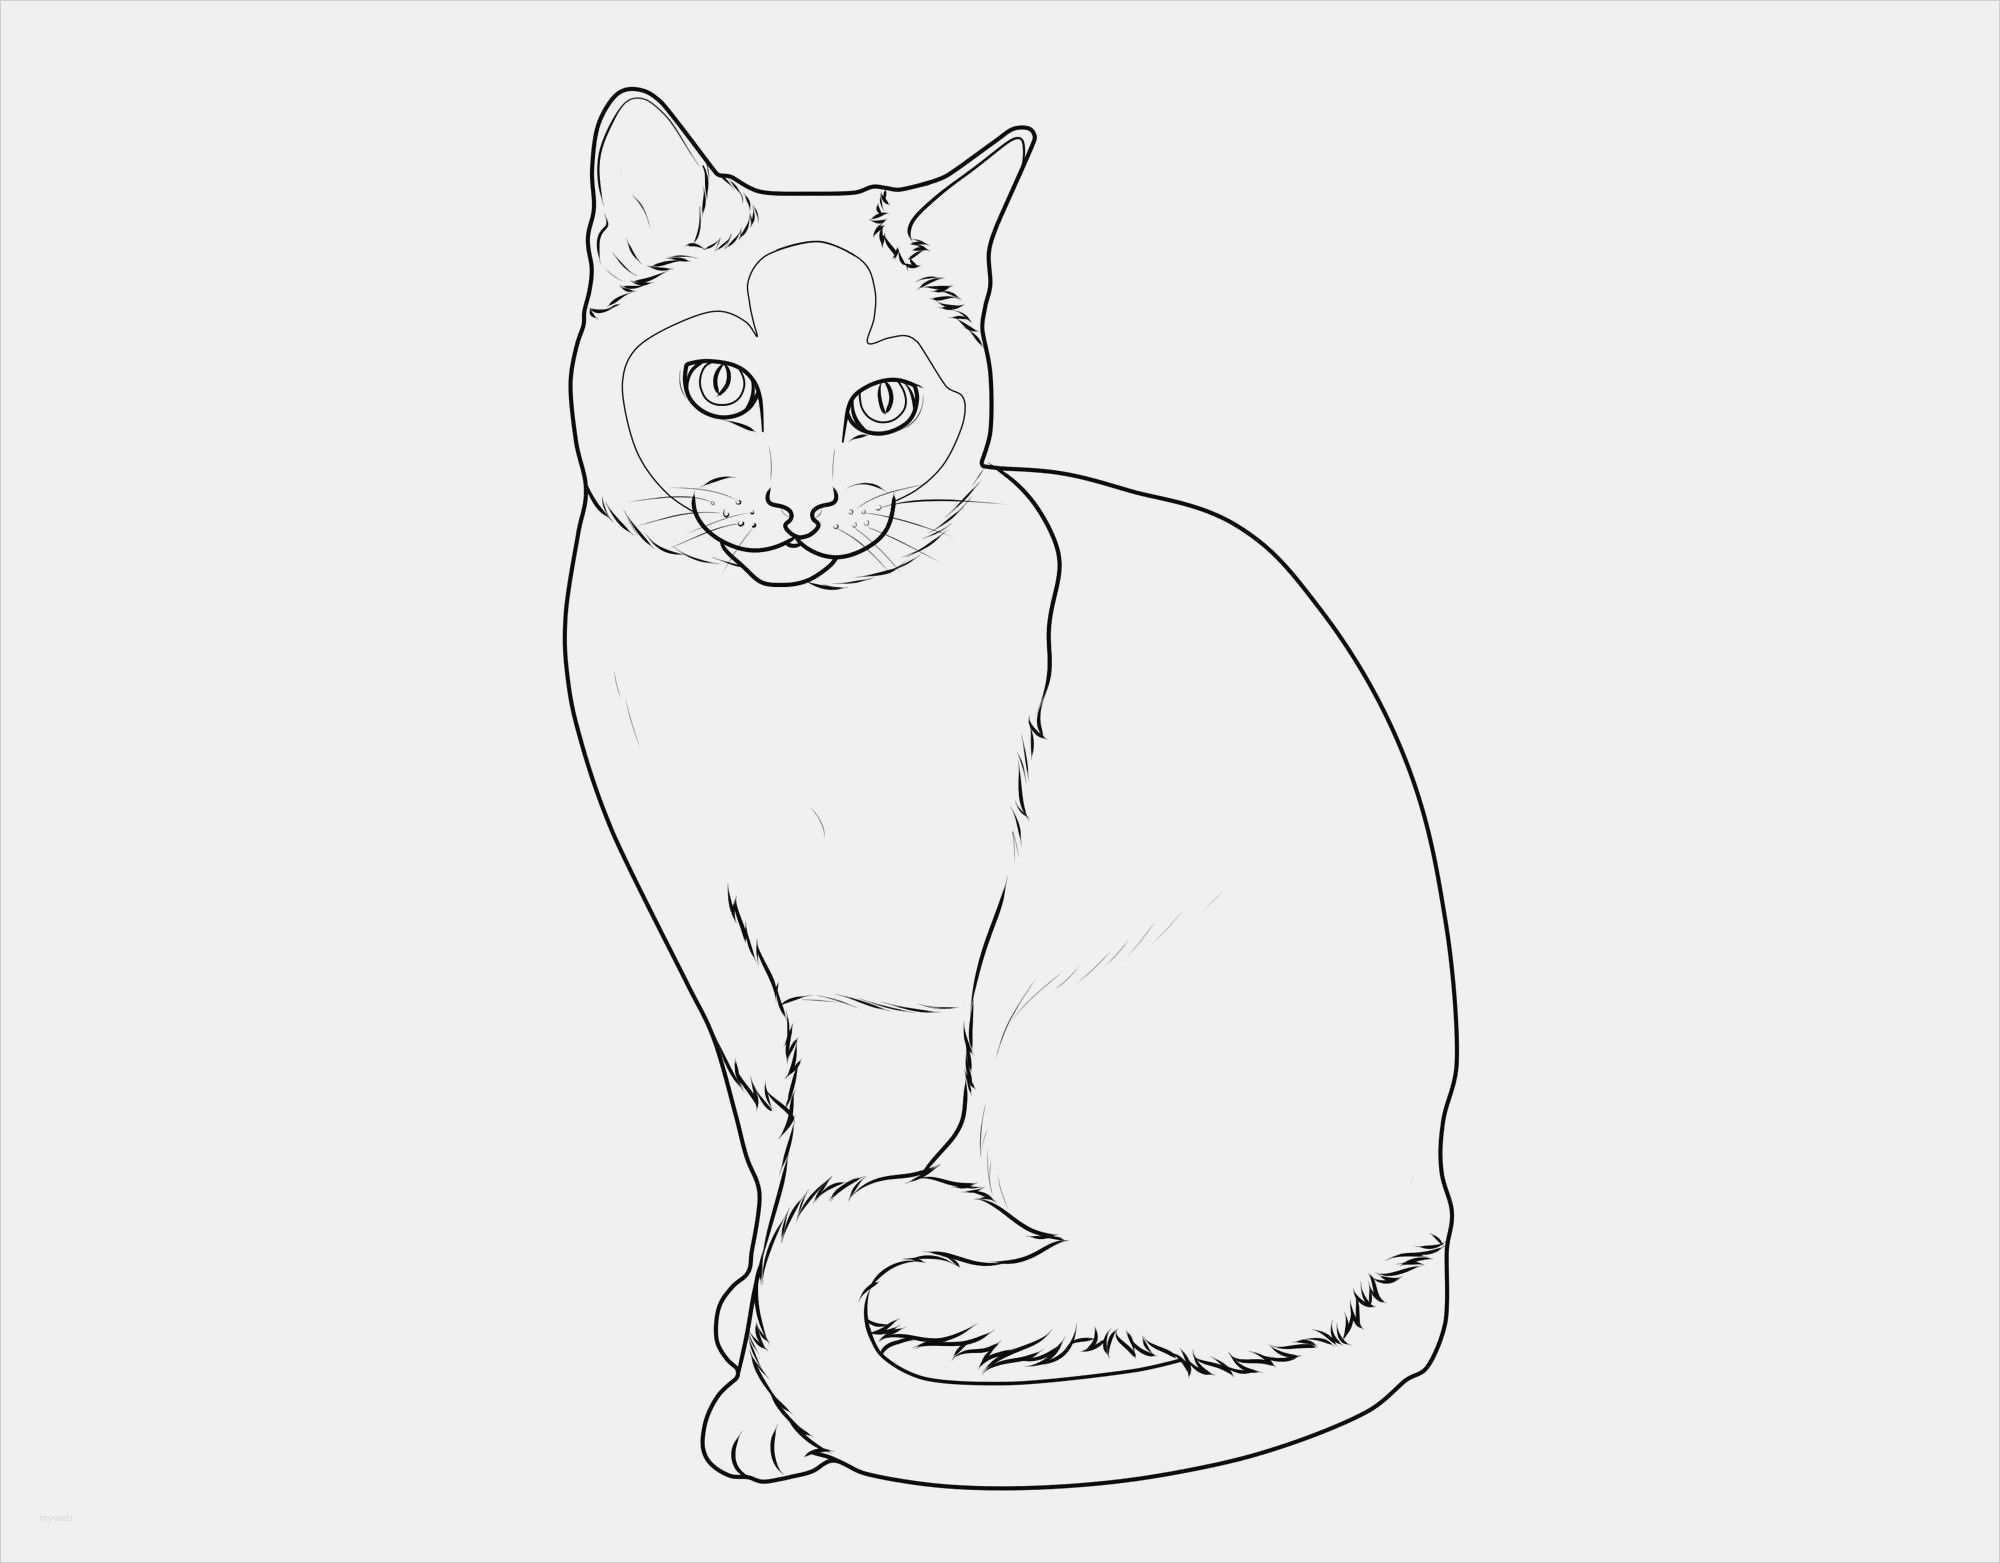 New Cats To Paint Coloring Coloring Pages Coloring Pagesforchildren Katze Malen Malvorlagen Tiere Katzen